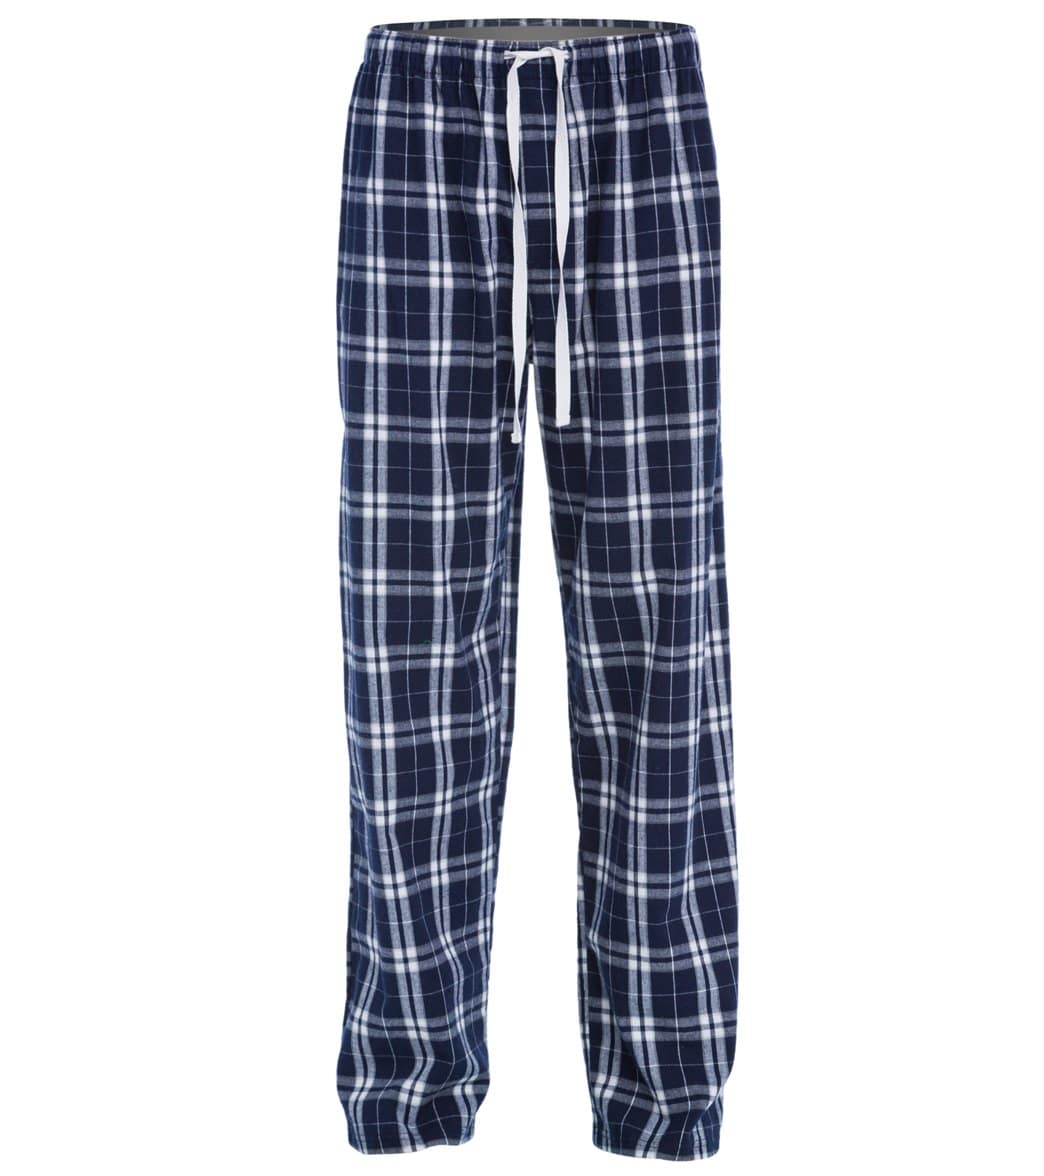 Women's Flannel Plaid Pants - Navy X-Small Cotton - Swimoutlet.com